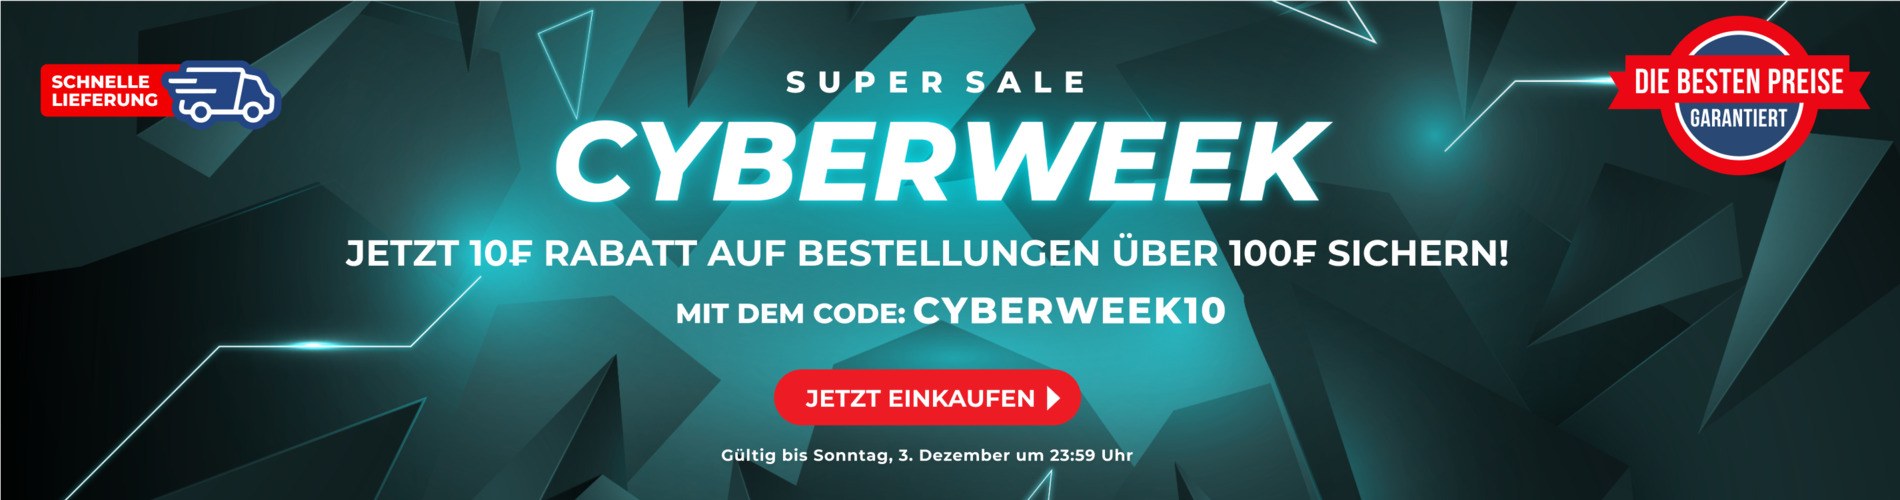 Cyberweek